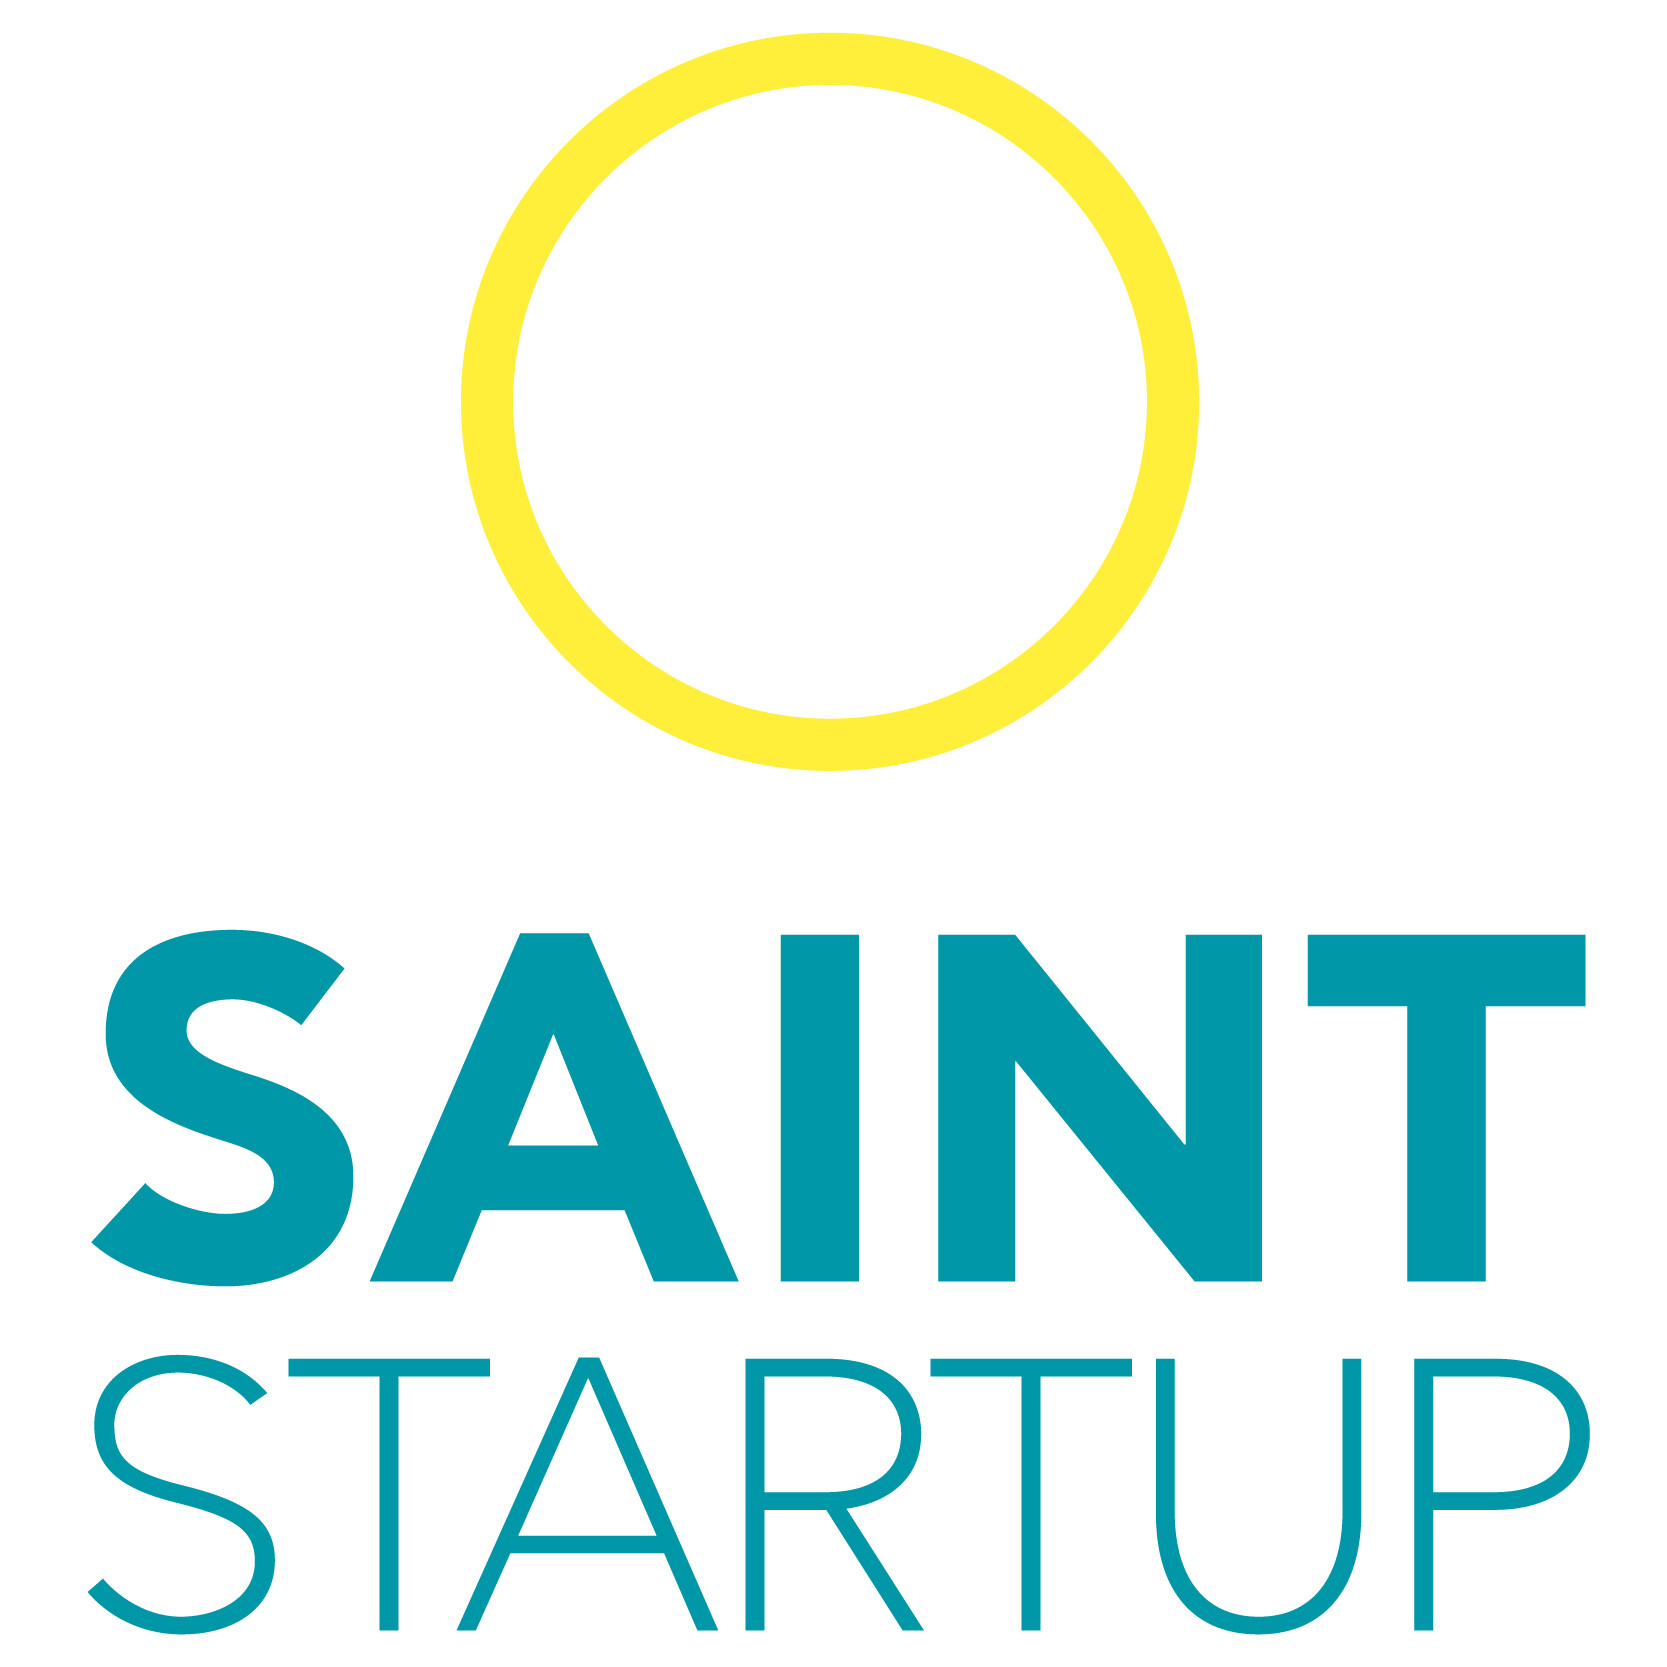 Saint Startup